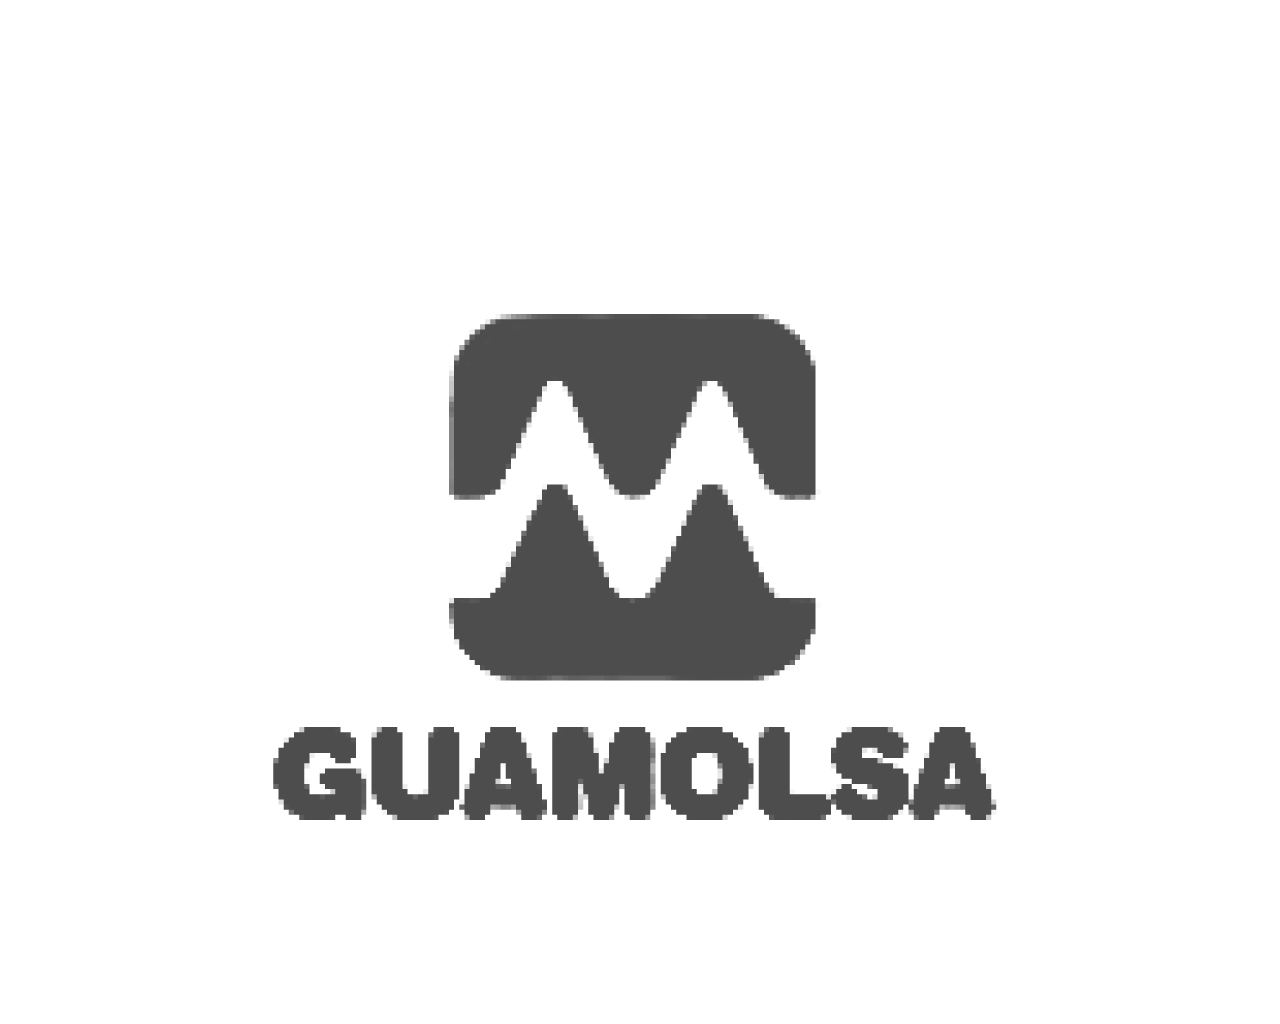 Guamolsa logo